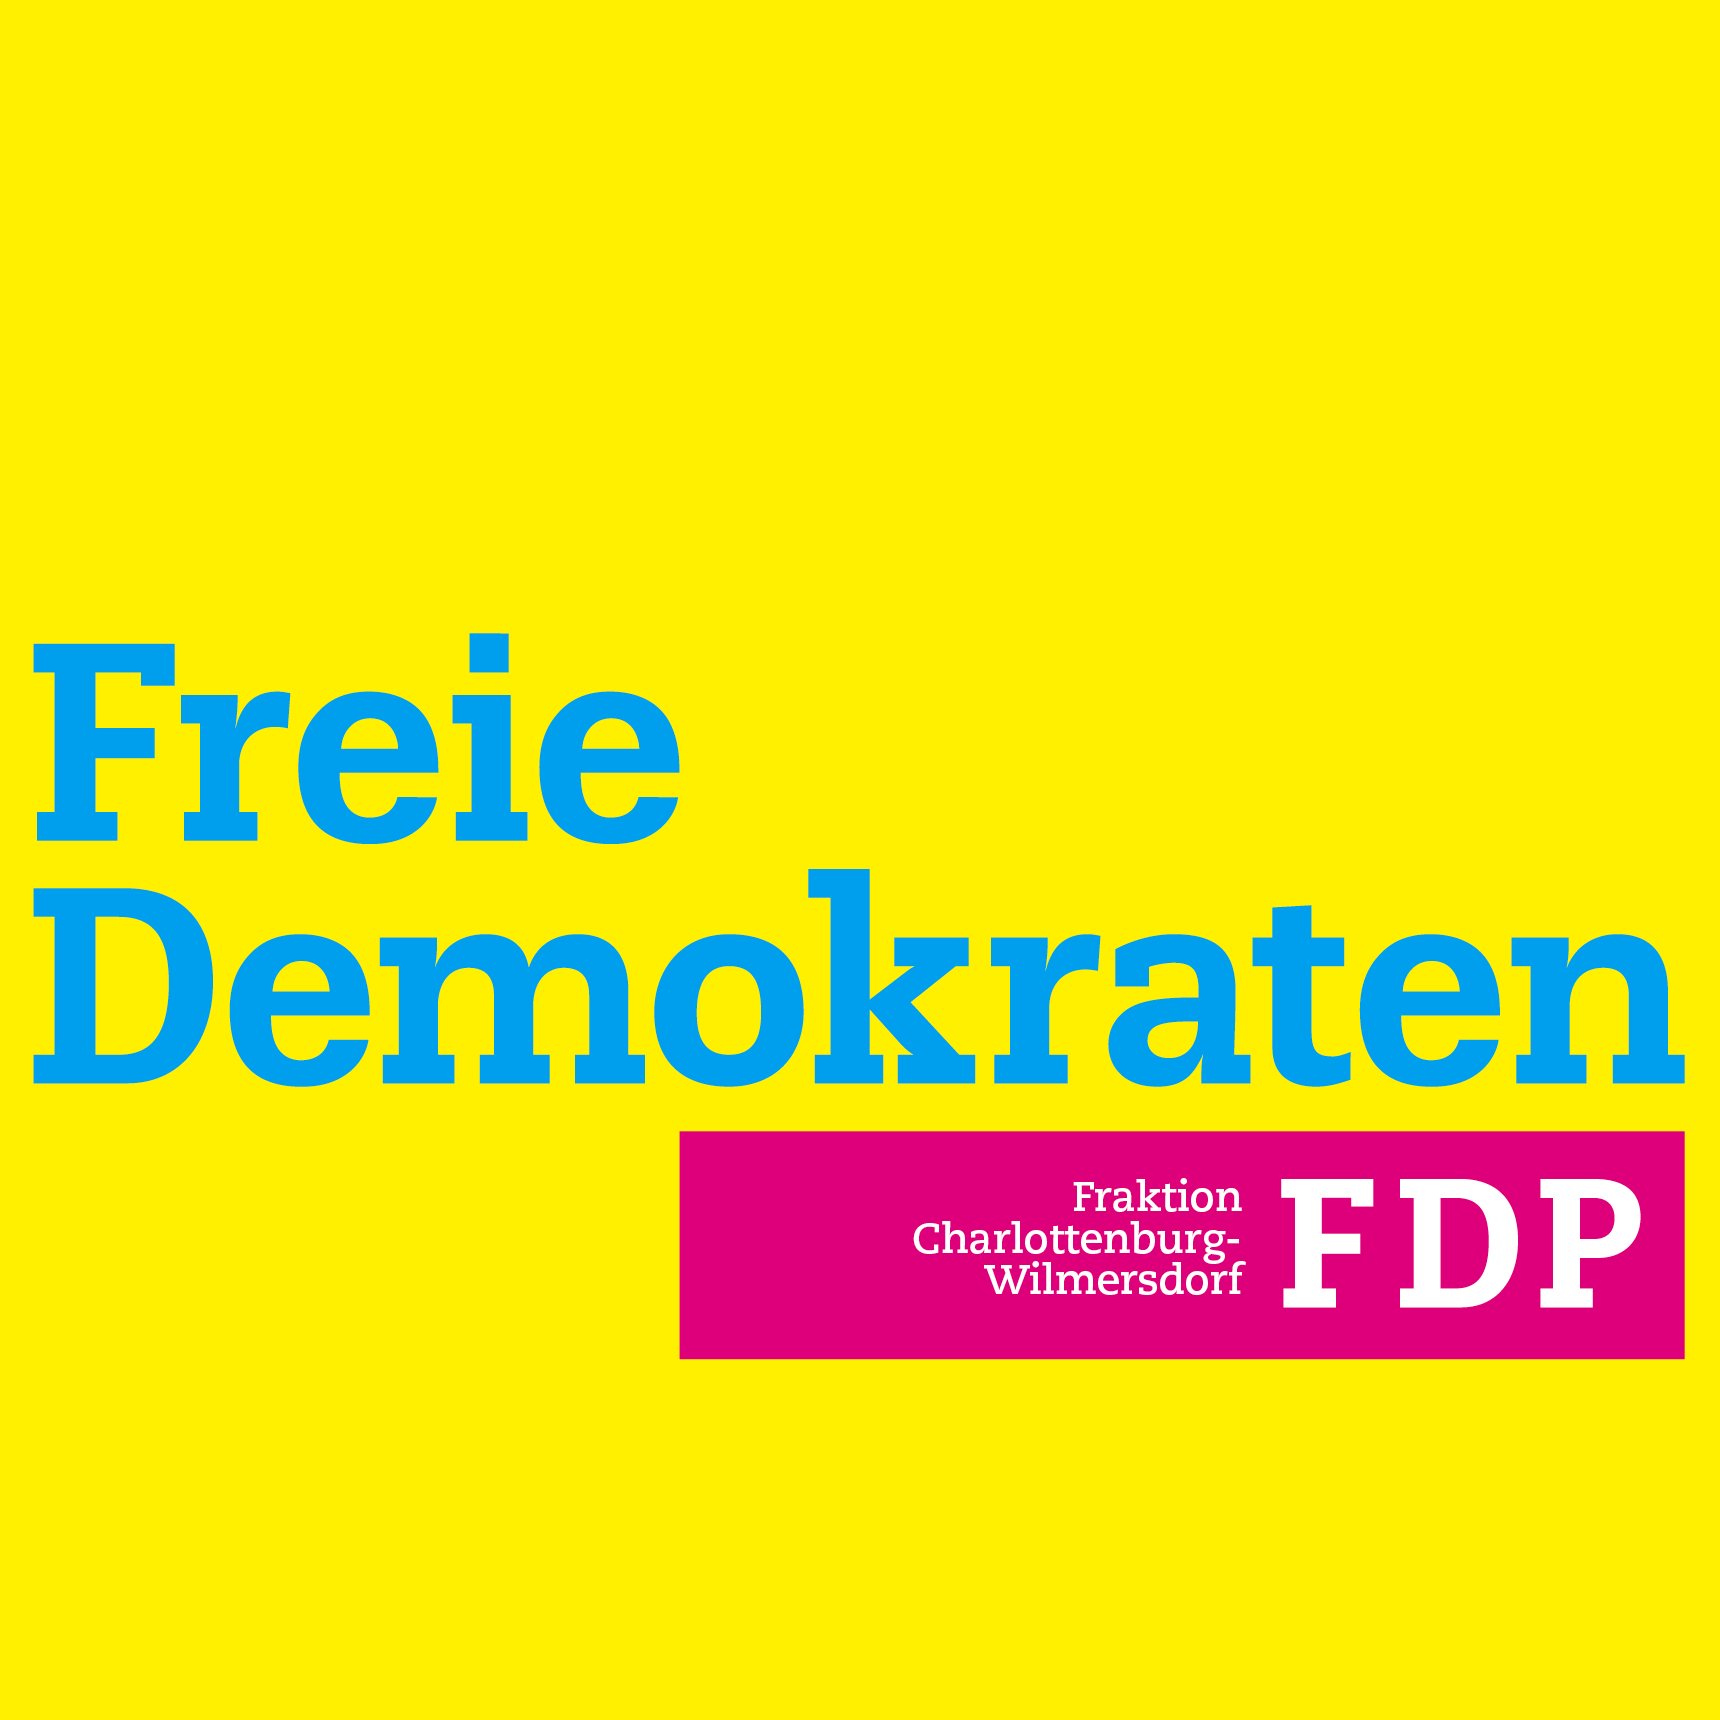 Wir sind die Fraktion der @fdp in der Bezirksverordnetenversammlung #Charlottenburg-#Wilmersdorf. #bvvcw